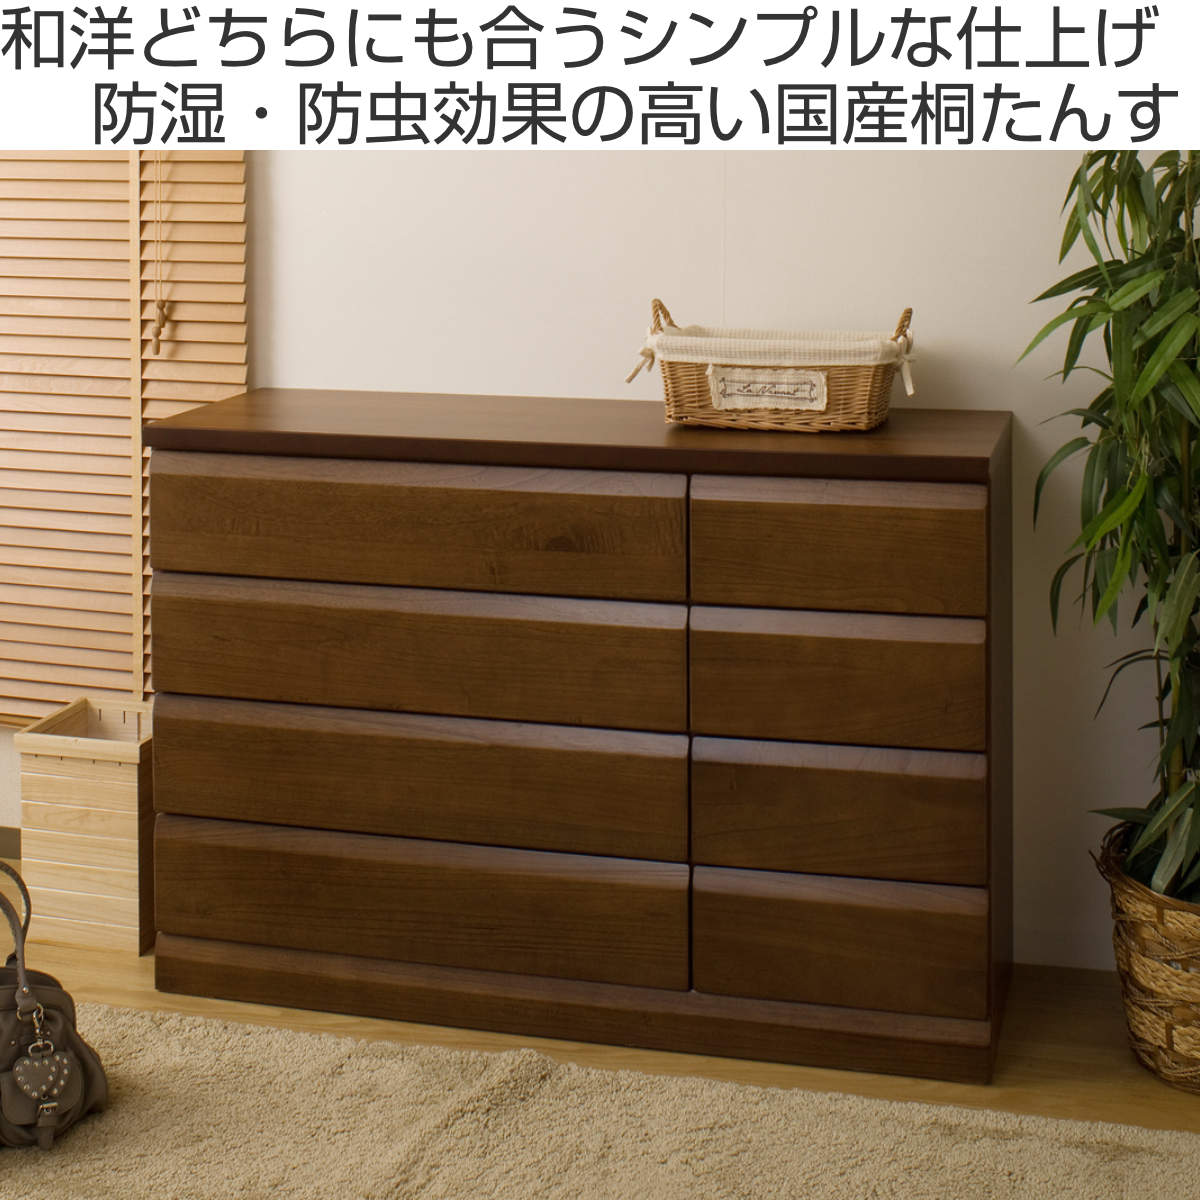 ハイチェスト【幅90cm】 木製(天然木) 日本製 ダークブラウン